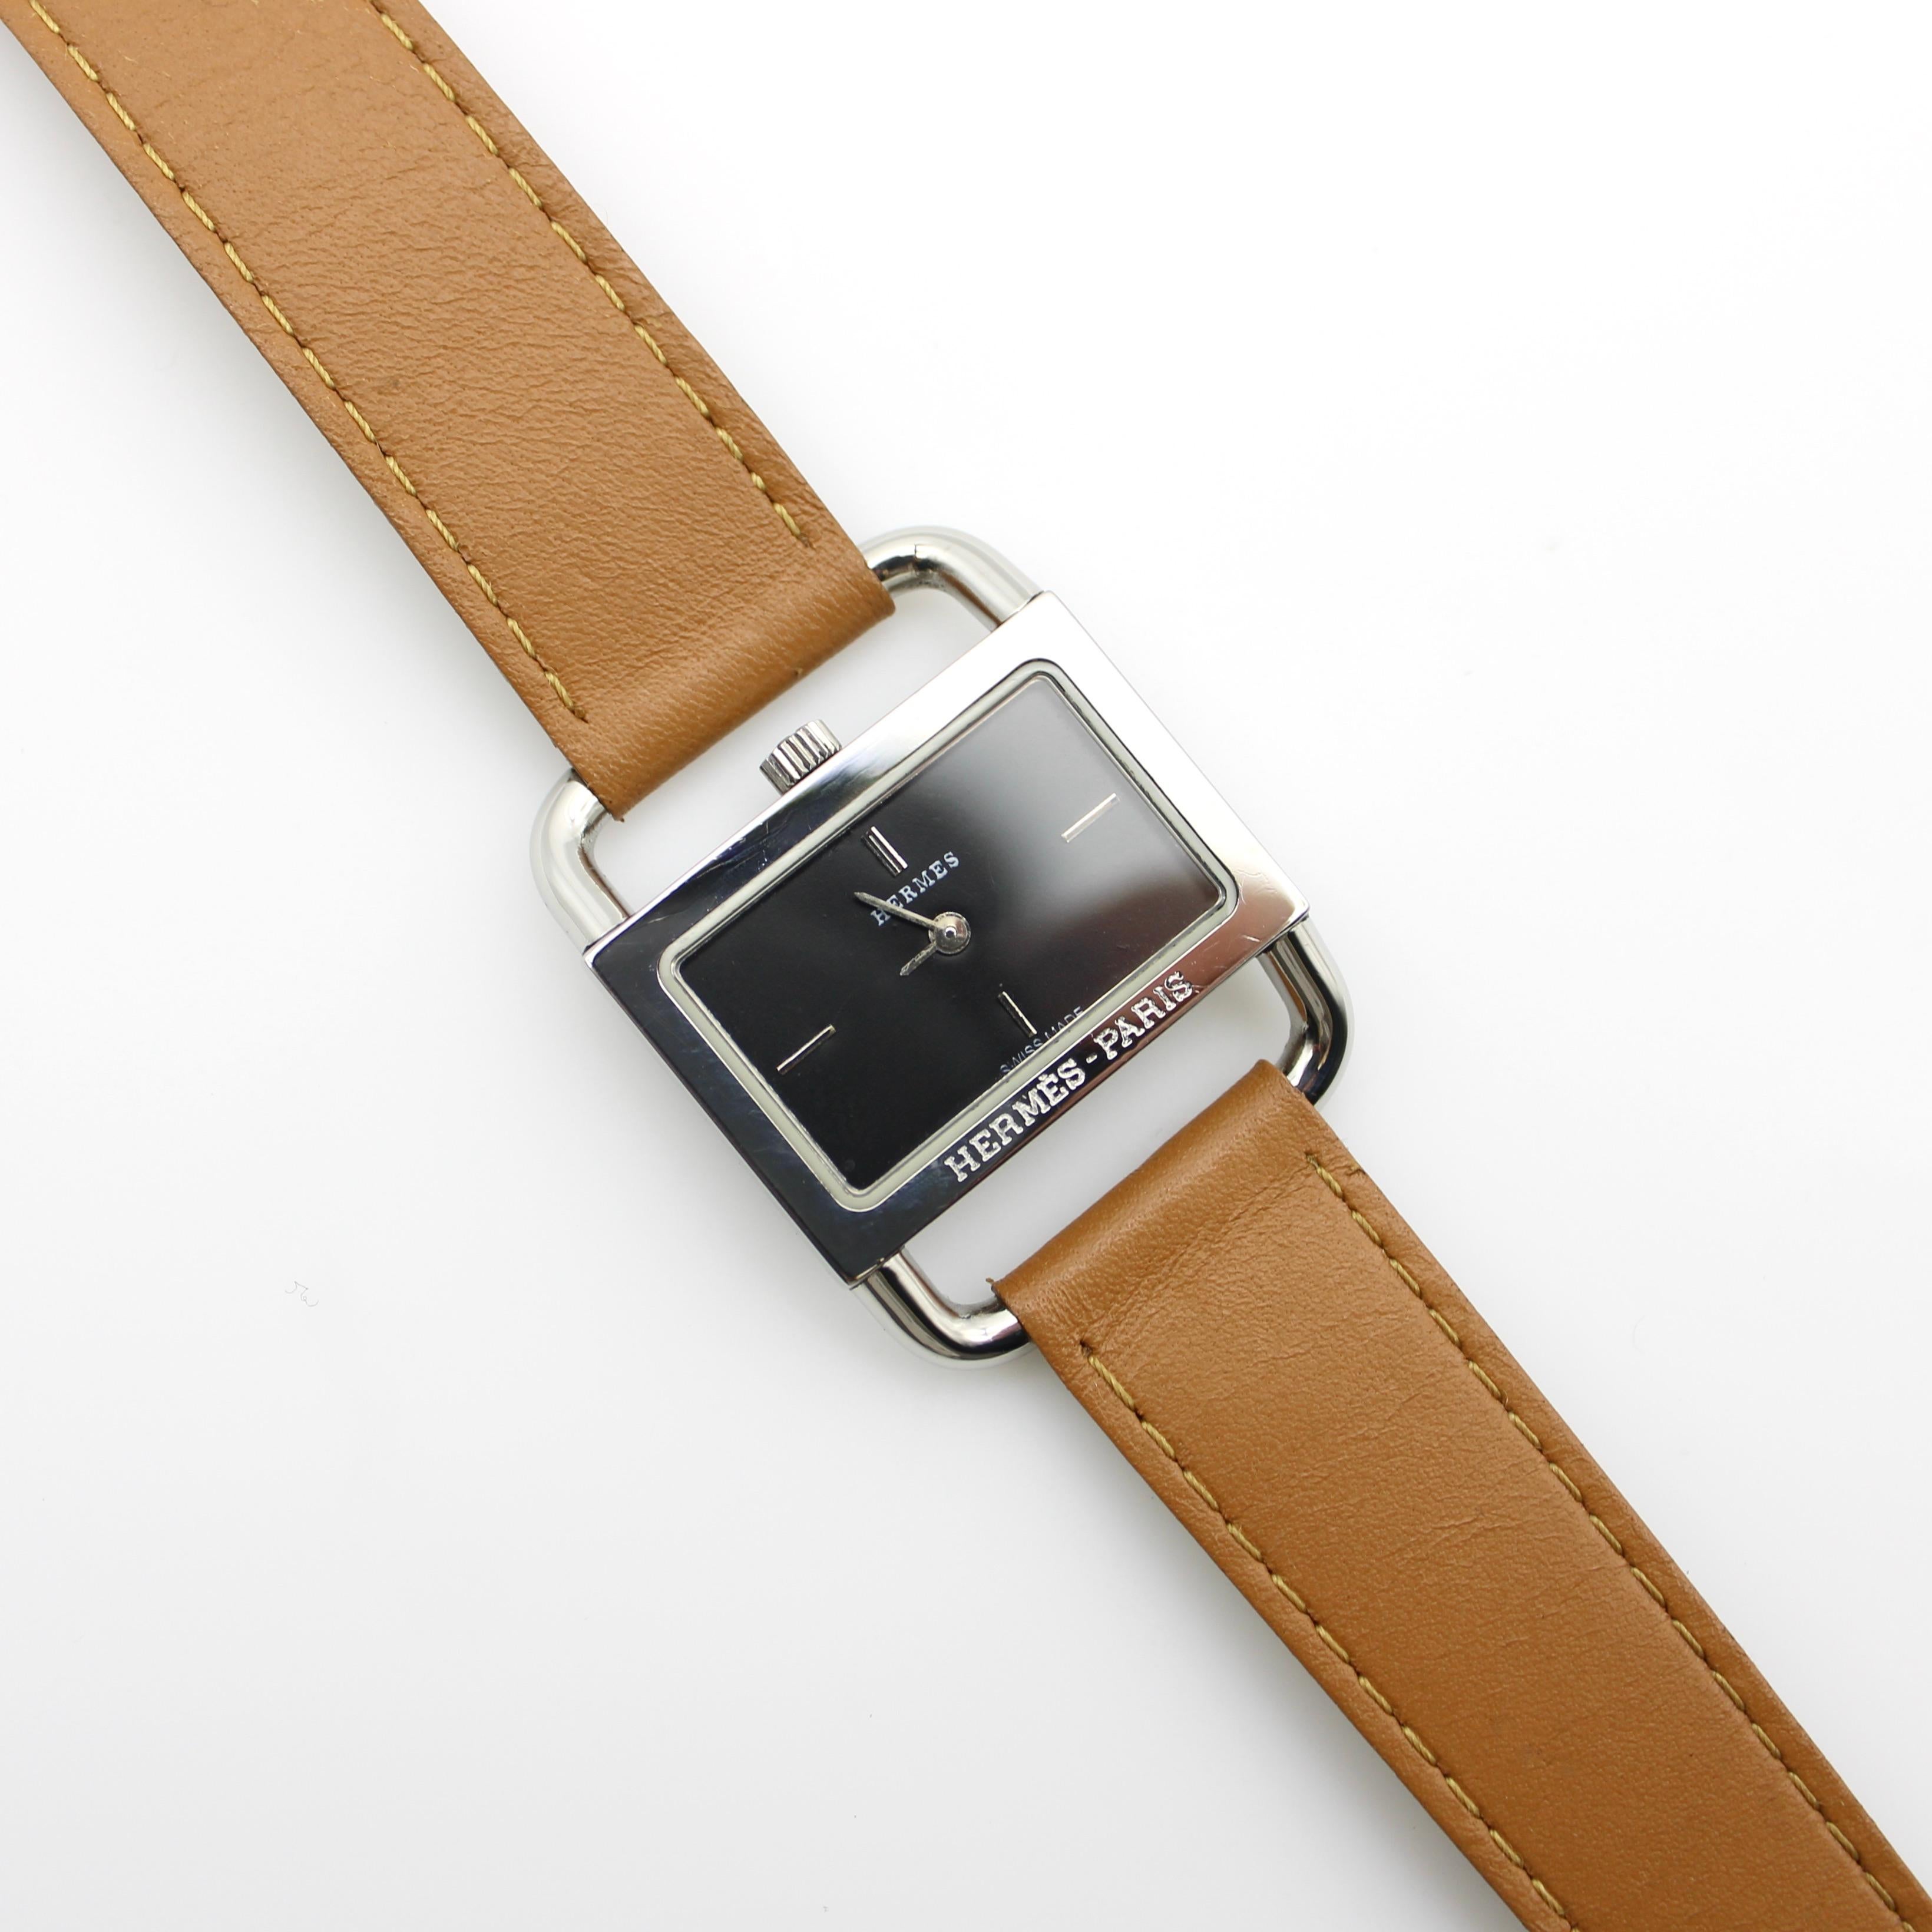 Une élégante montre-bracelet Hermès de fabrication parisienne avec mouvement à pile à quartz, vers 1980. Le style minimal de la montre est raffiné, avec quatre lignes simples à midi, 3, 6 et 9 pour indiquer l'heure. L'extérieur de la montre est en